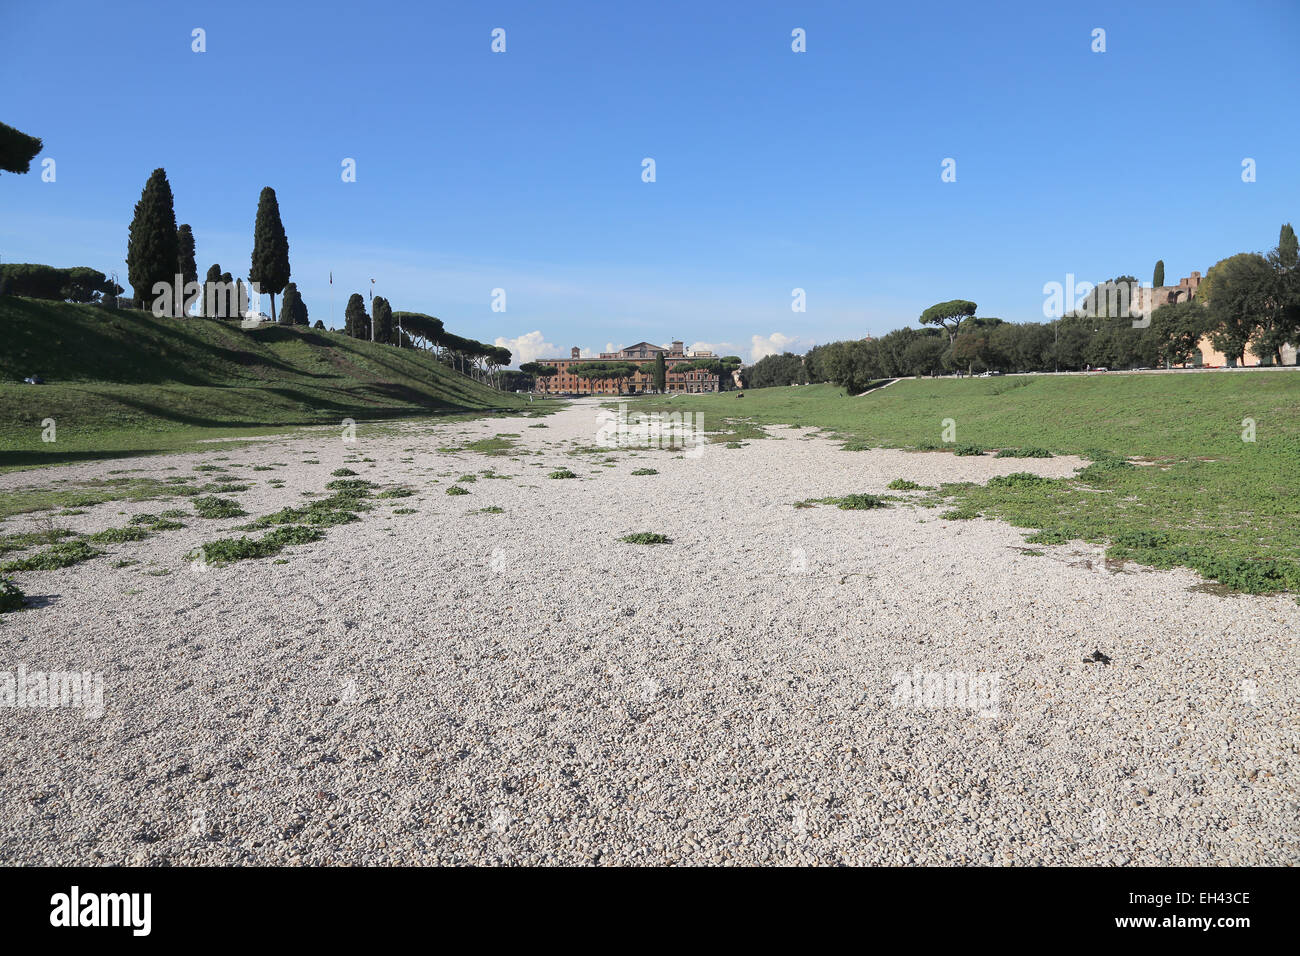 L'Italie. Rome. Le Circus Maximus. Les courses de chars romains antiques stadium. Point de vue. Ruines. Banque D'Images